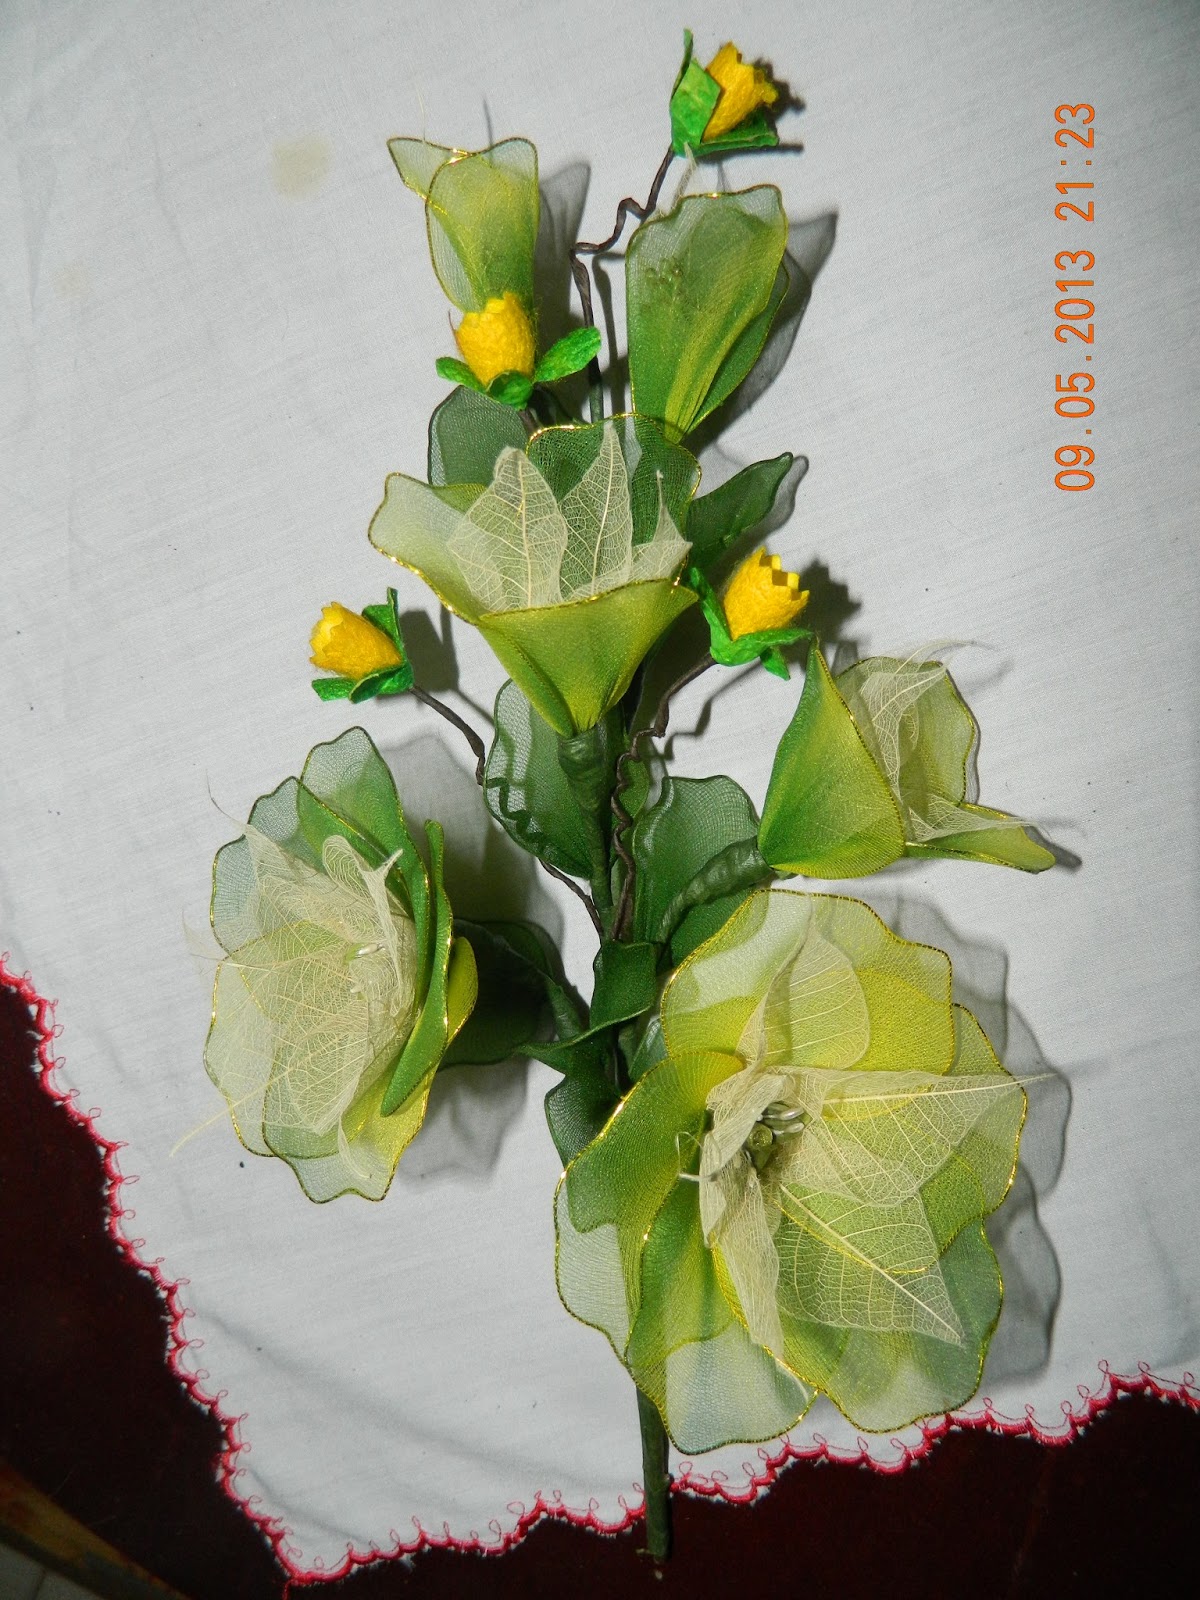 Nurin's florist: KERTAS BUNGA YANG DIGUBAH MENJADI BUNGA 